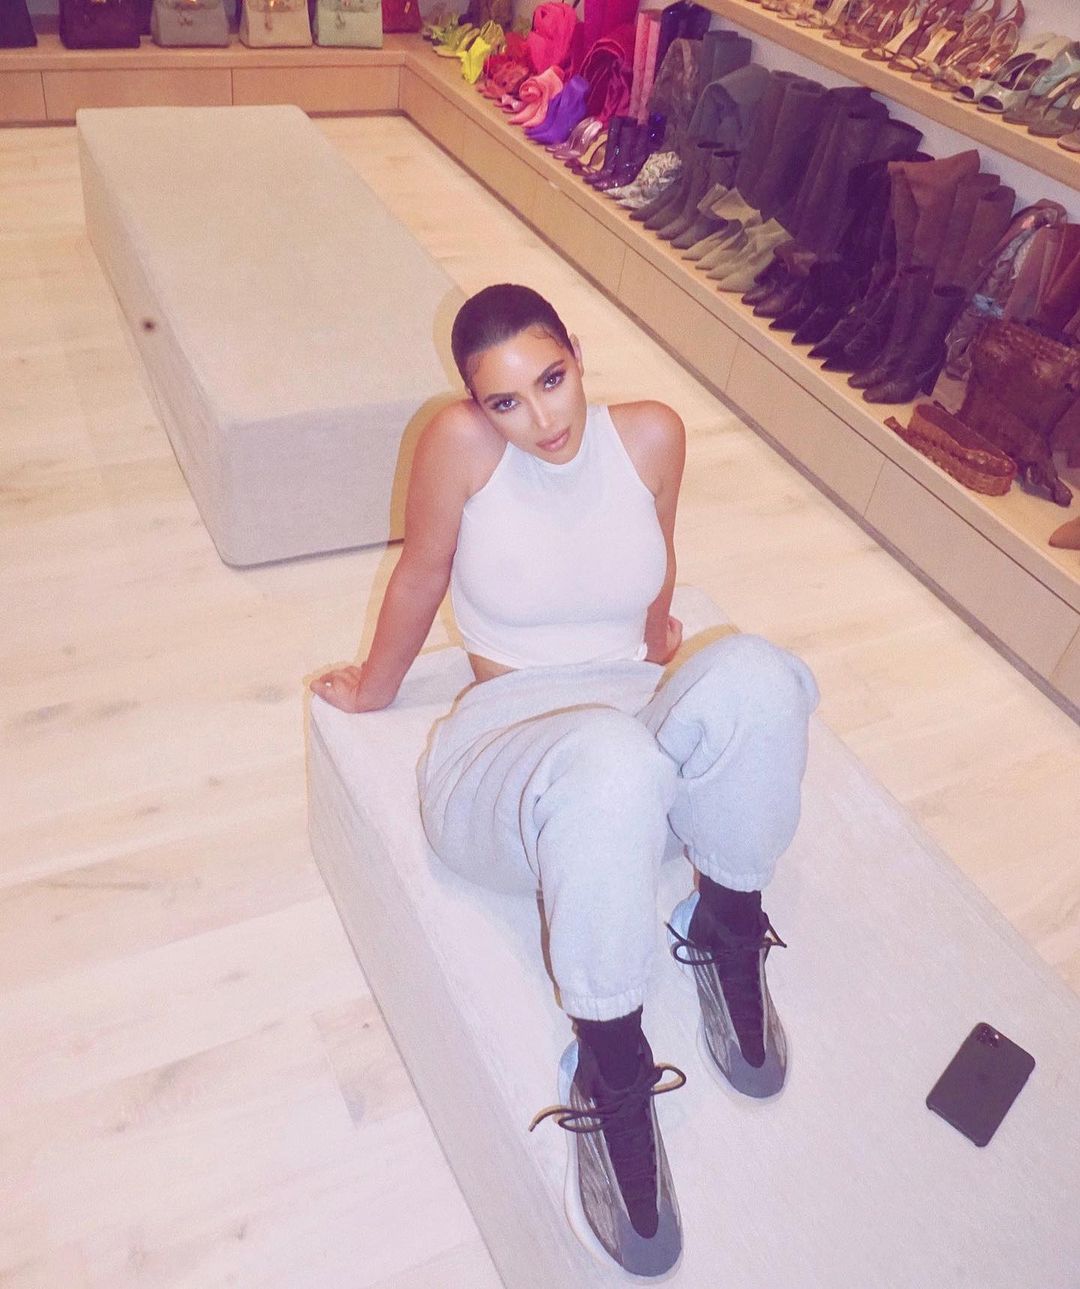 Strike a pose! Kim Kardashian's most shameless selfies | %%channel_name%%